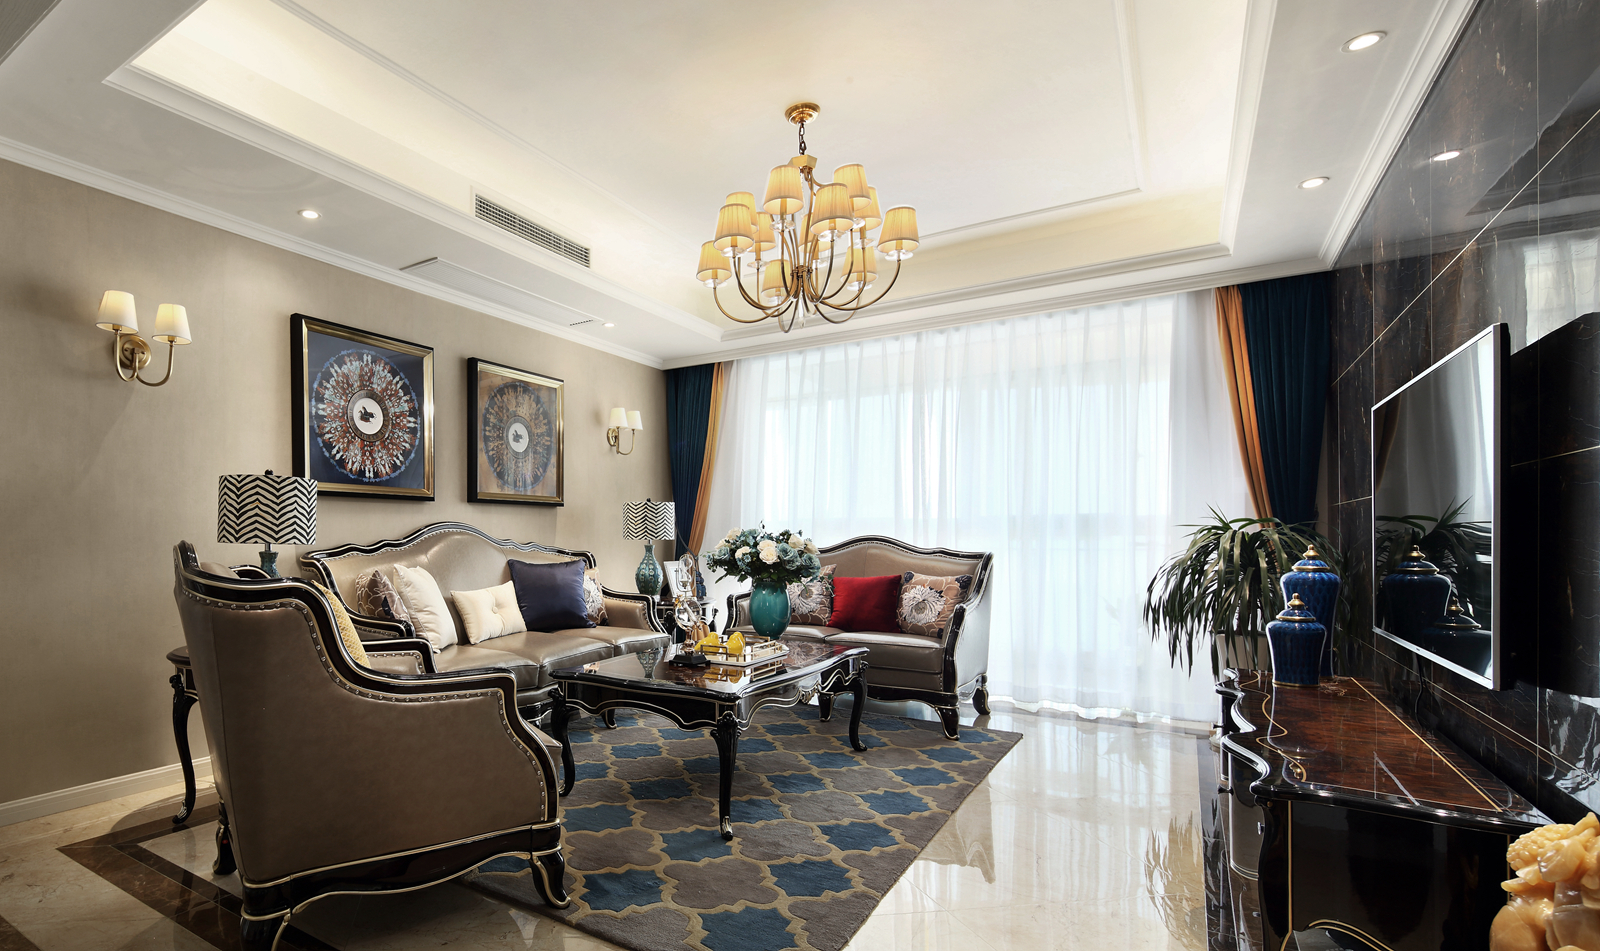 窗帘 椅子 沙发 美式新古典风格客厅装修效果图